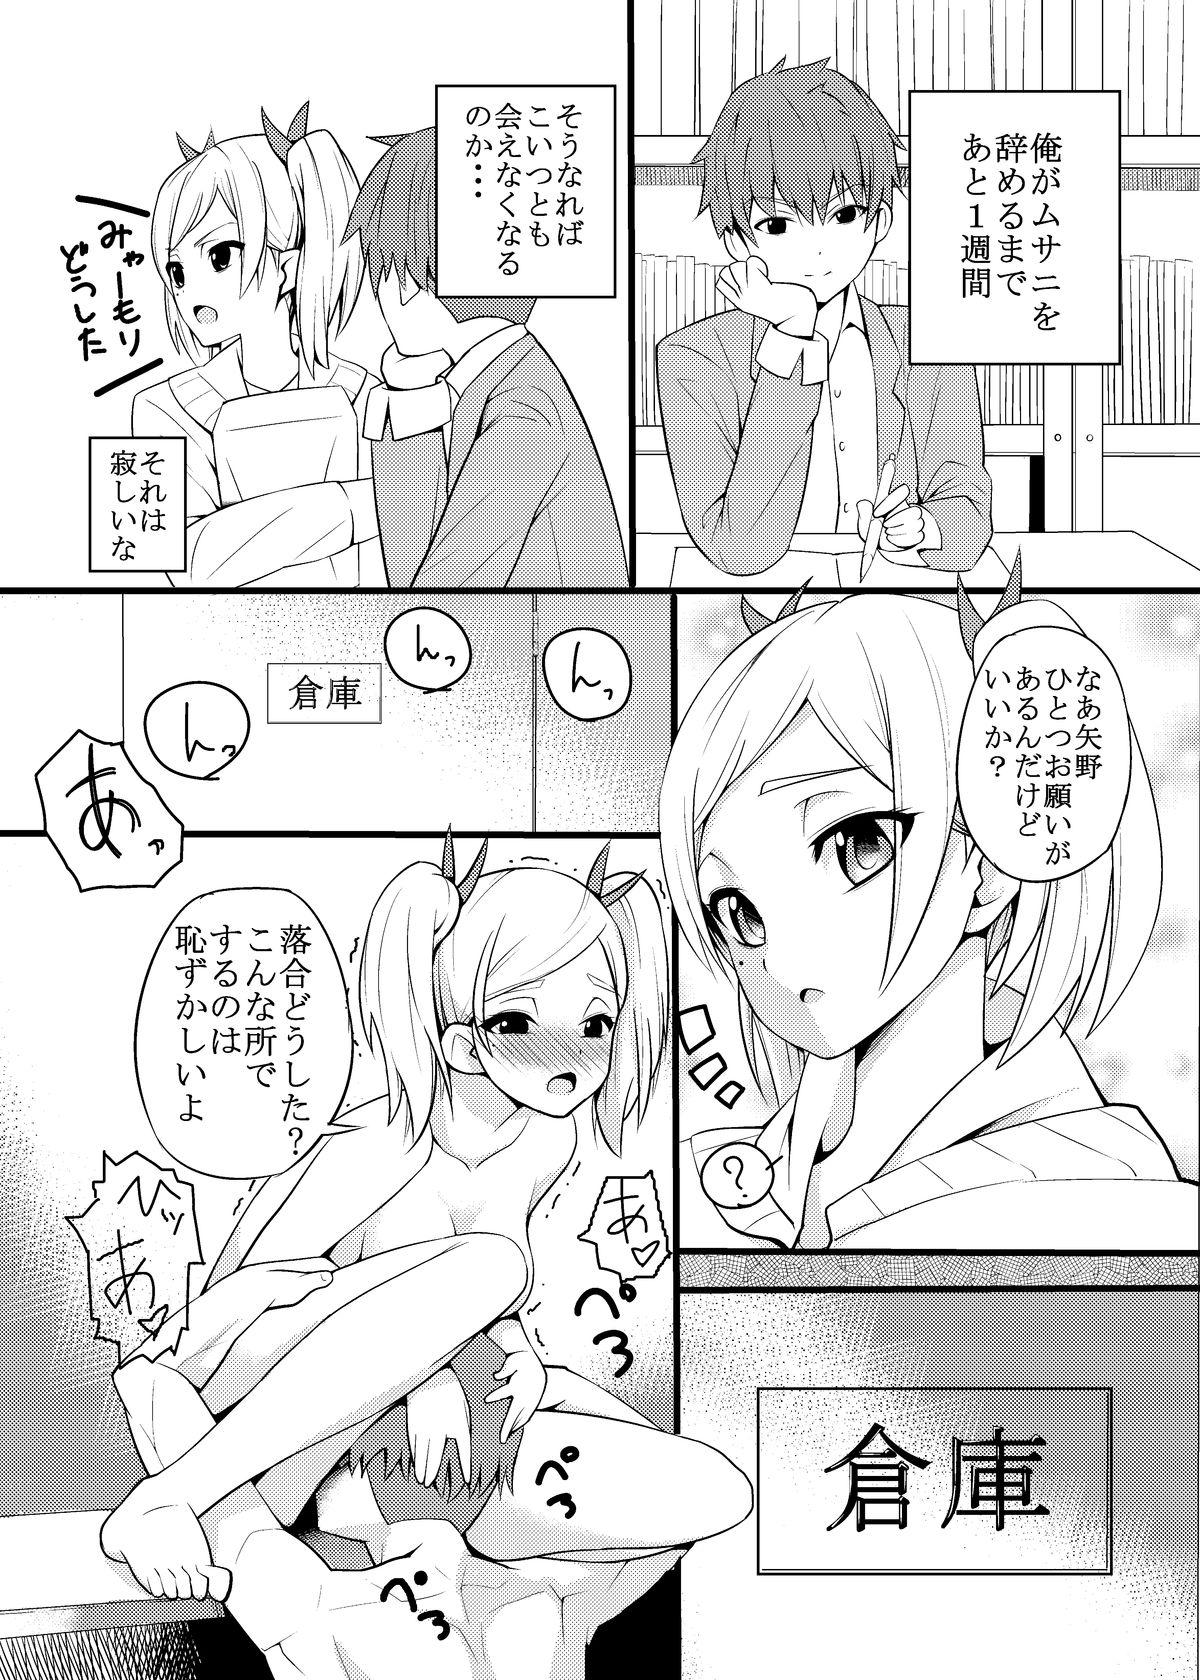 Yano Senpai no H na Manga 2